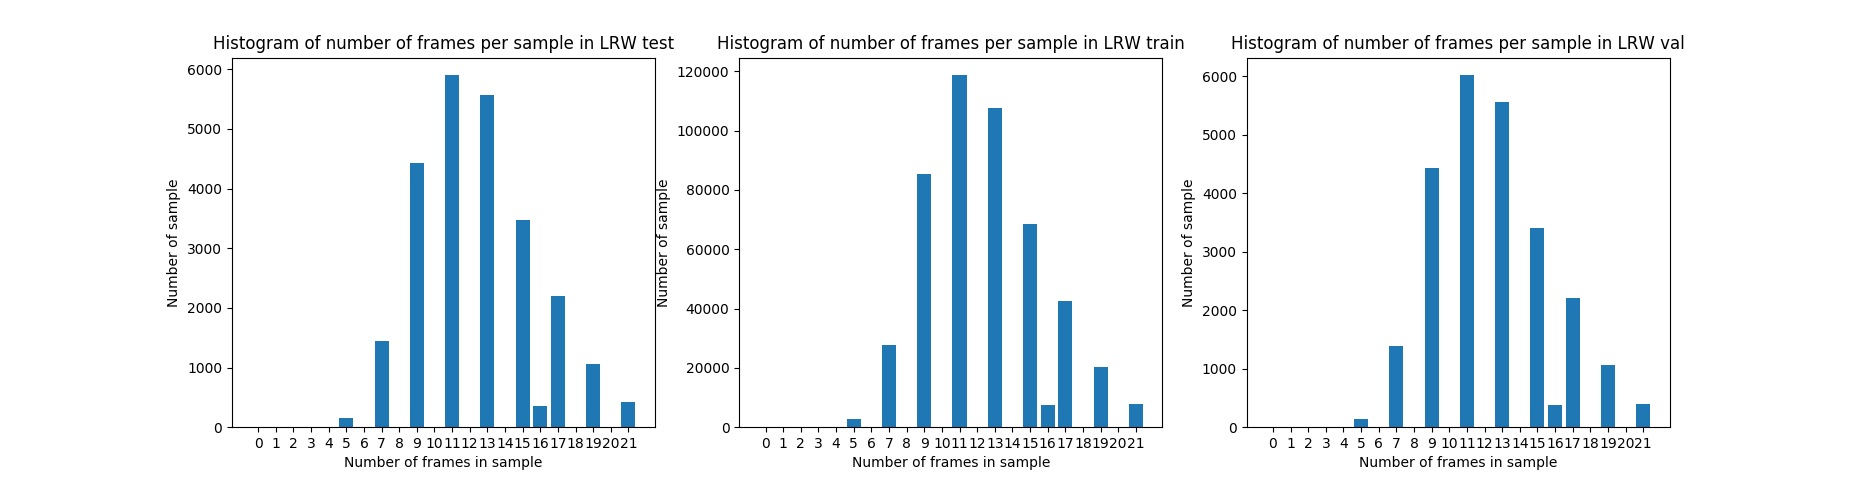 histogram_of_number_of_frames_per_sample_per_set.png